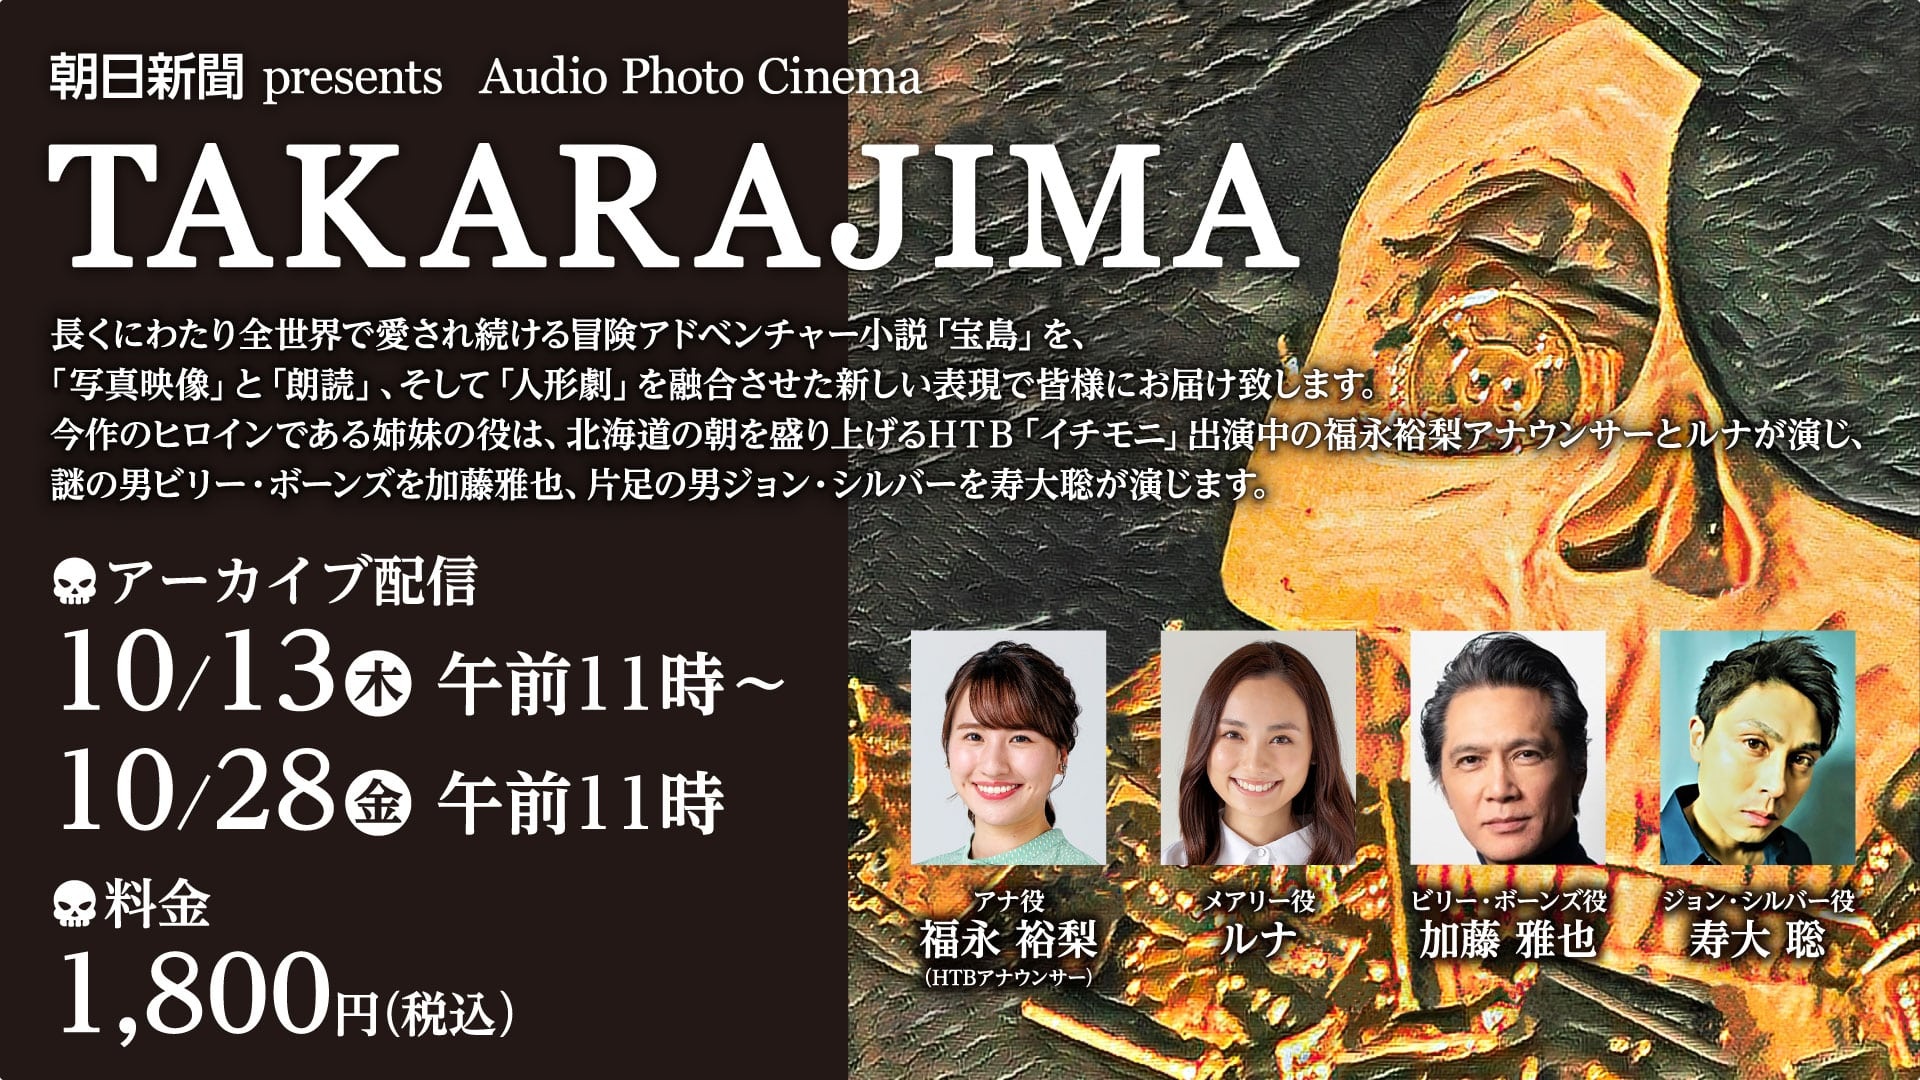 朝日新聞 presents 『Audio Photo Cinema TAKARAJIMA』